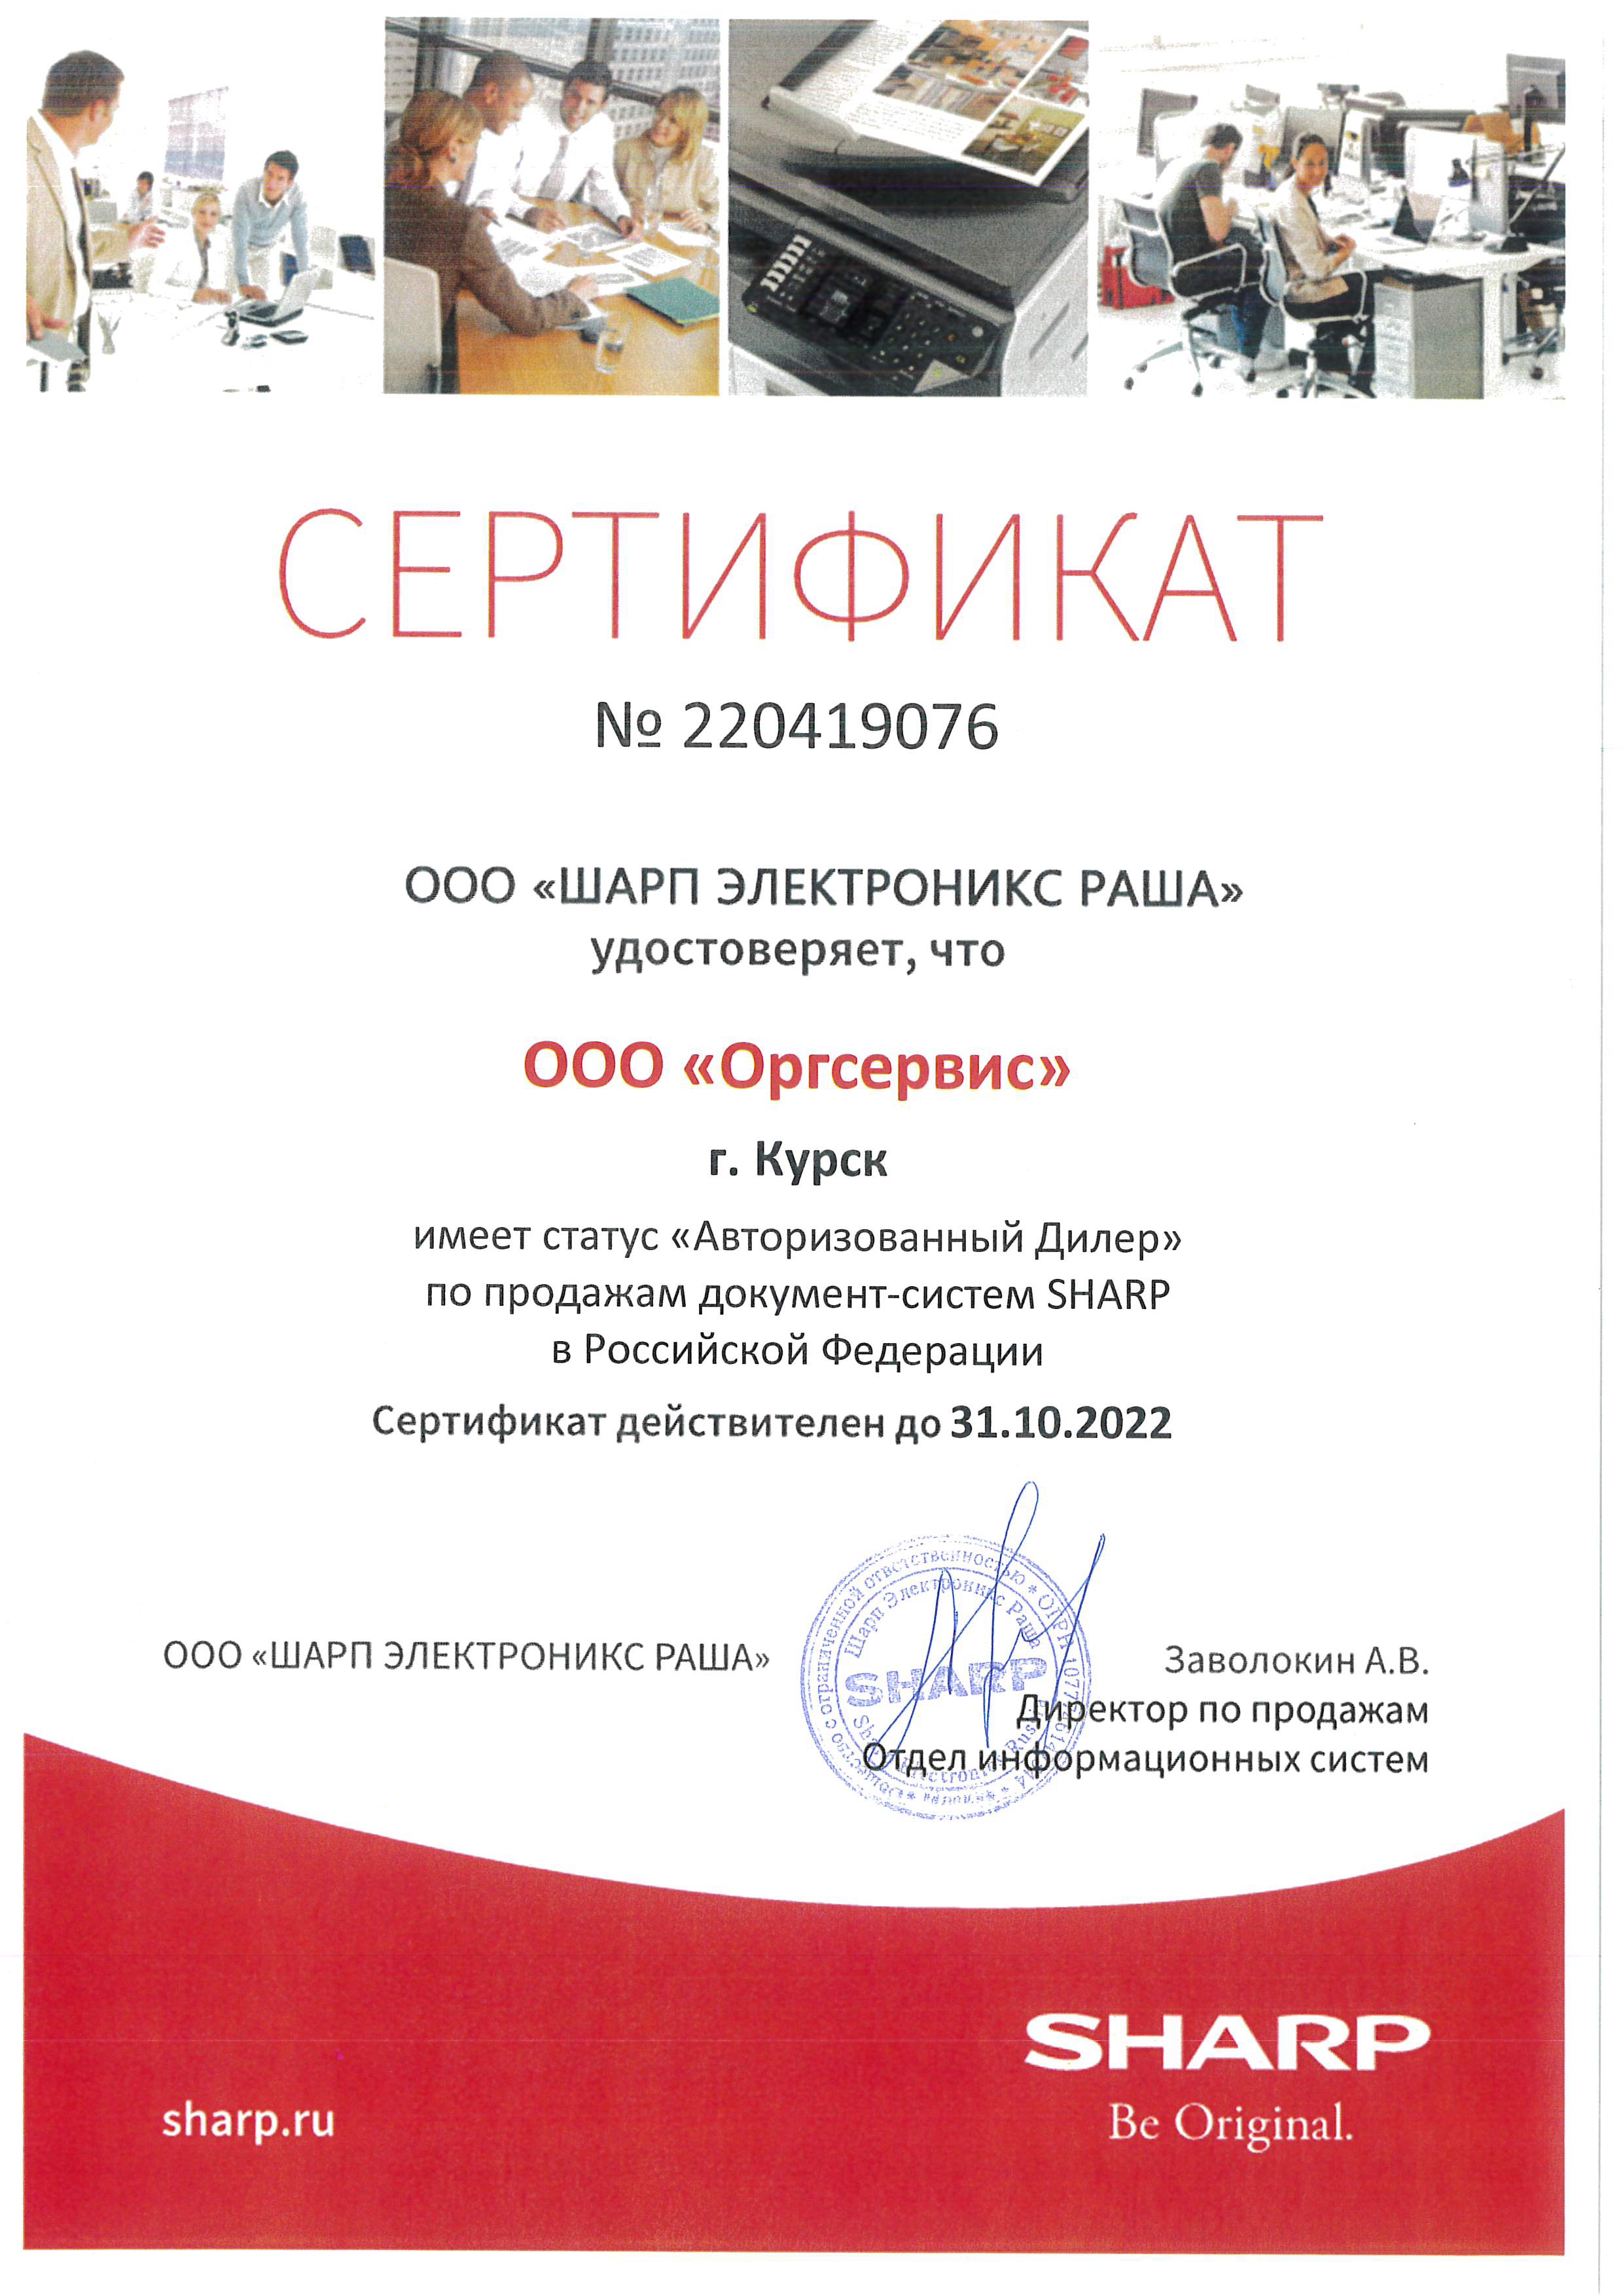 06_Сертификат_Sharp_2022